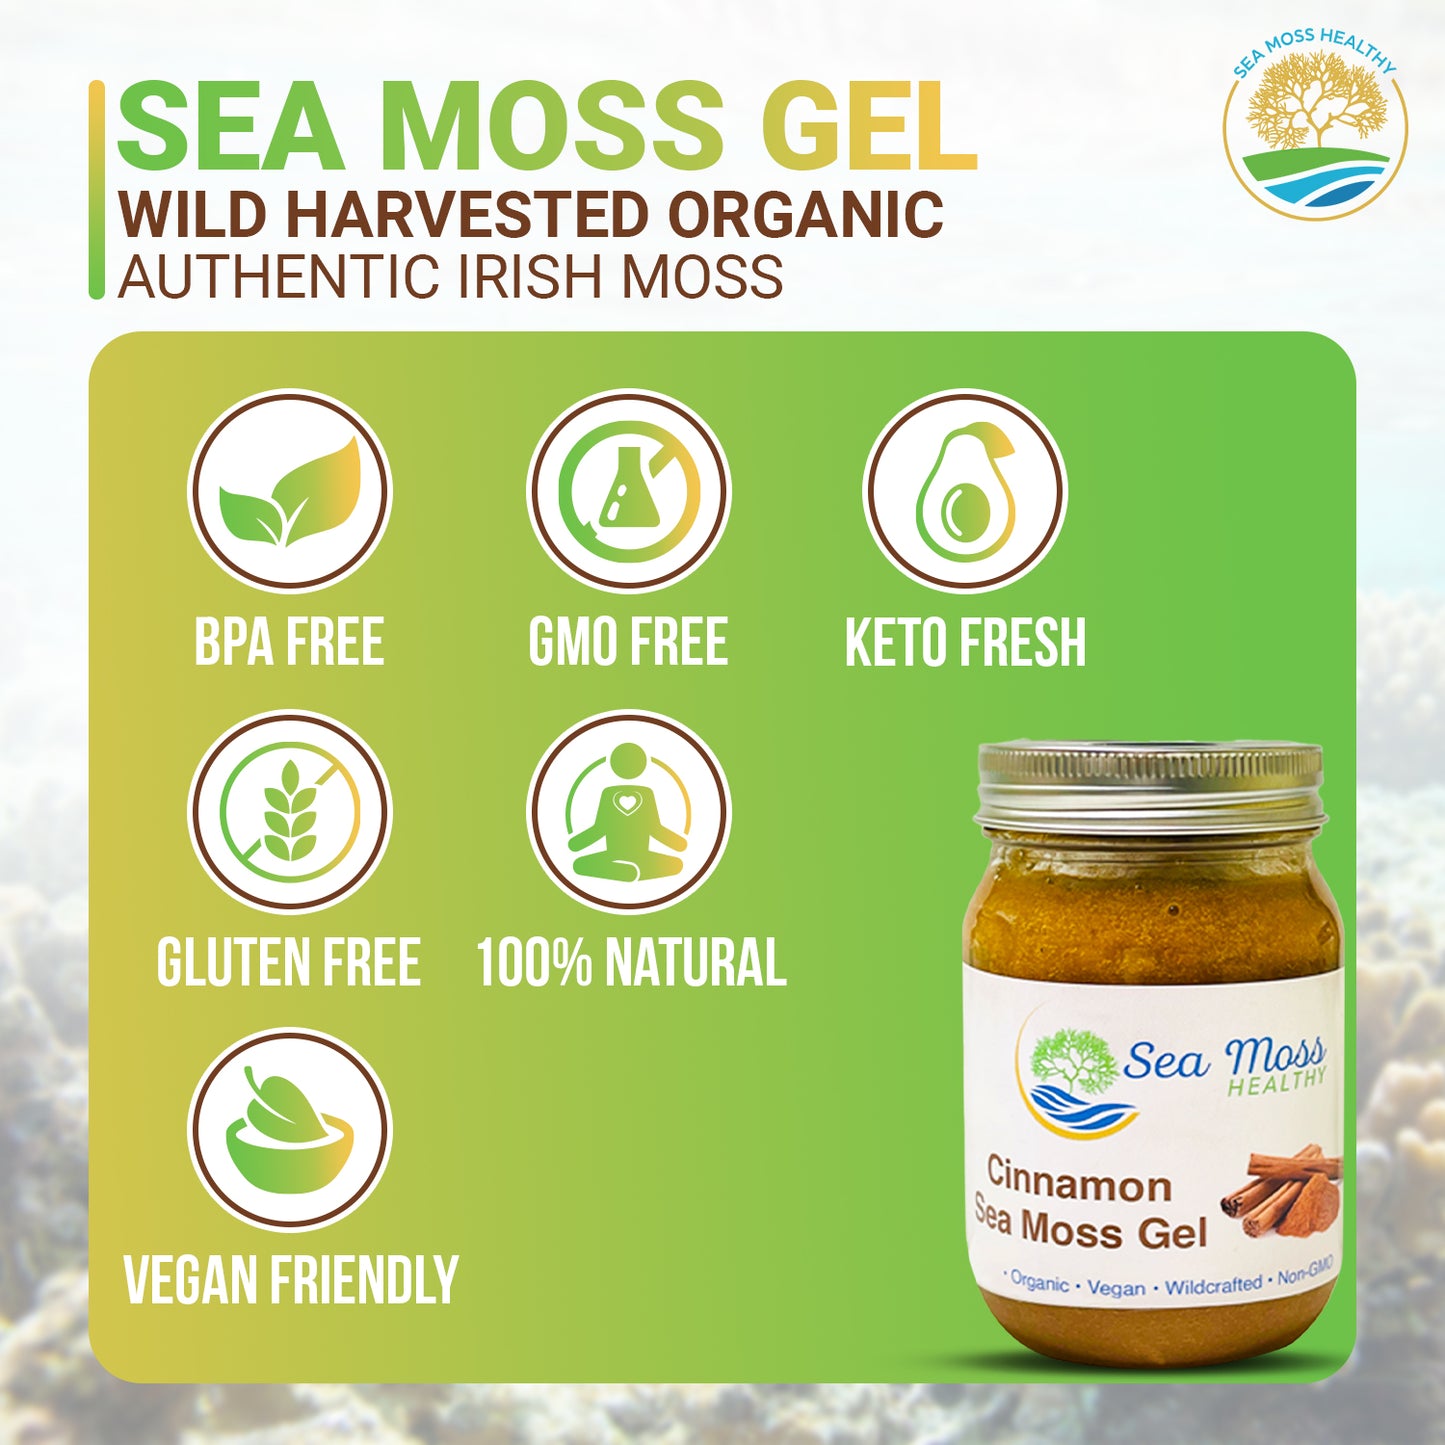 Cinnamon Sea Moss Gel